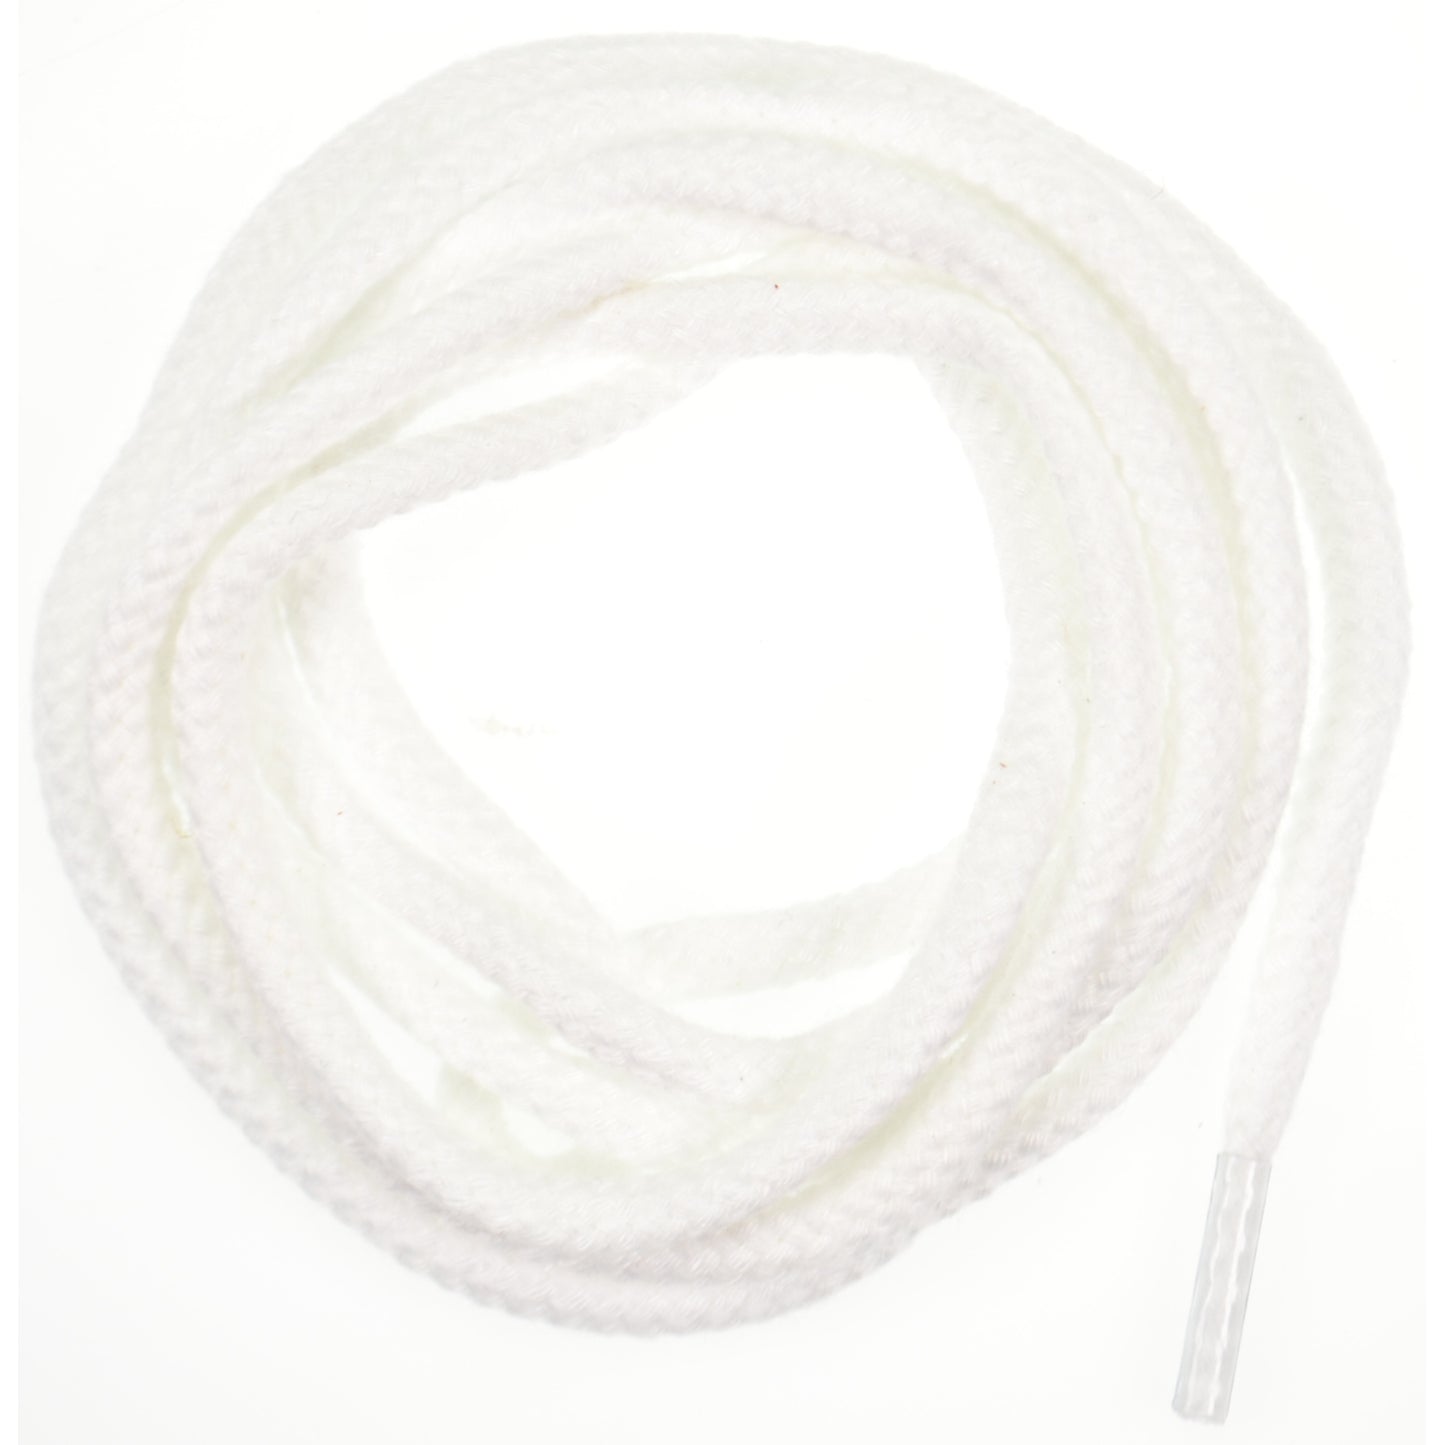 90cm Cord Shoe Laces - White